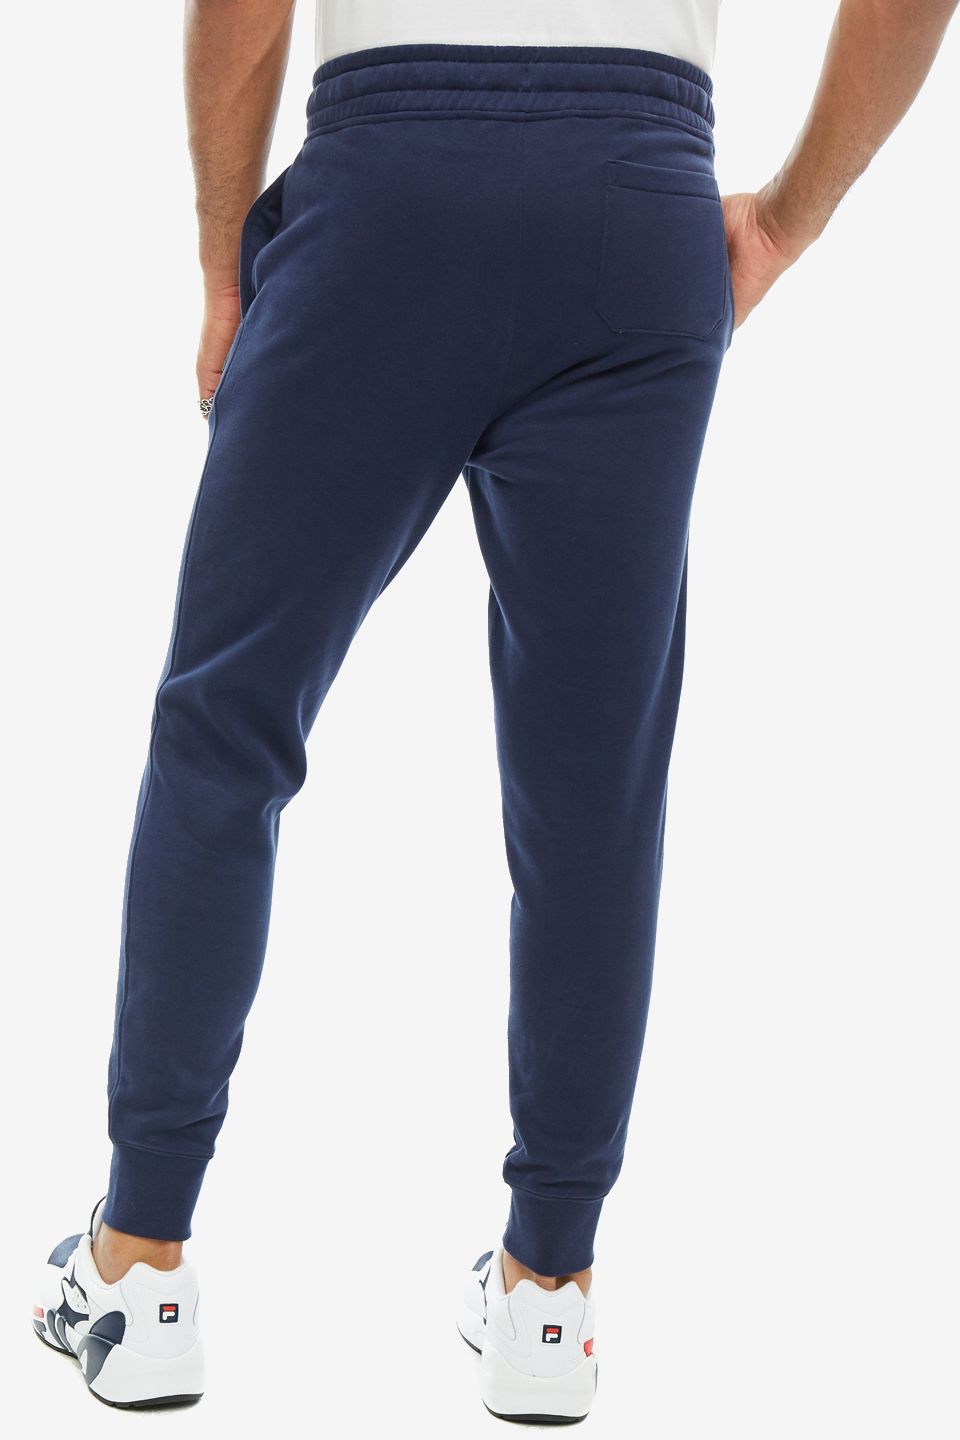 Спортивные брюки мужские FILA LM171YB4-410 синие 2XL - купить в Москве,цены на Мегамаркет